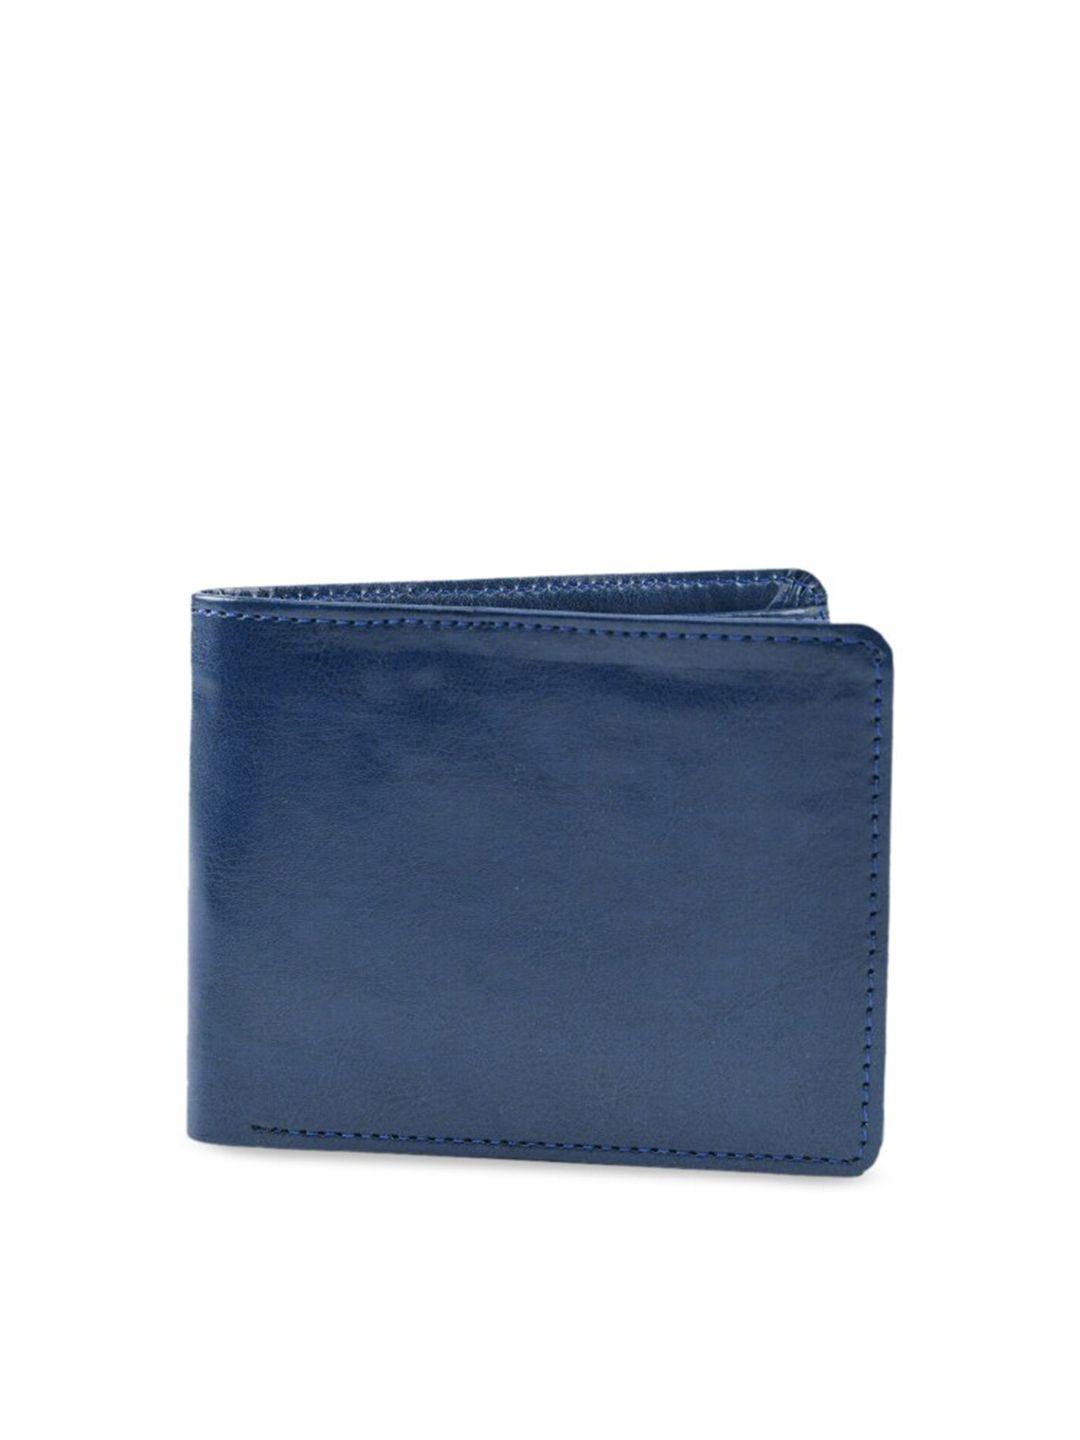 kastner men two fold wallet